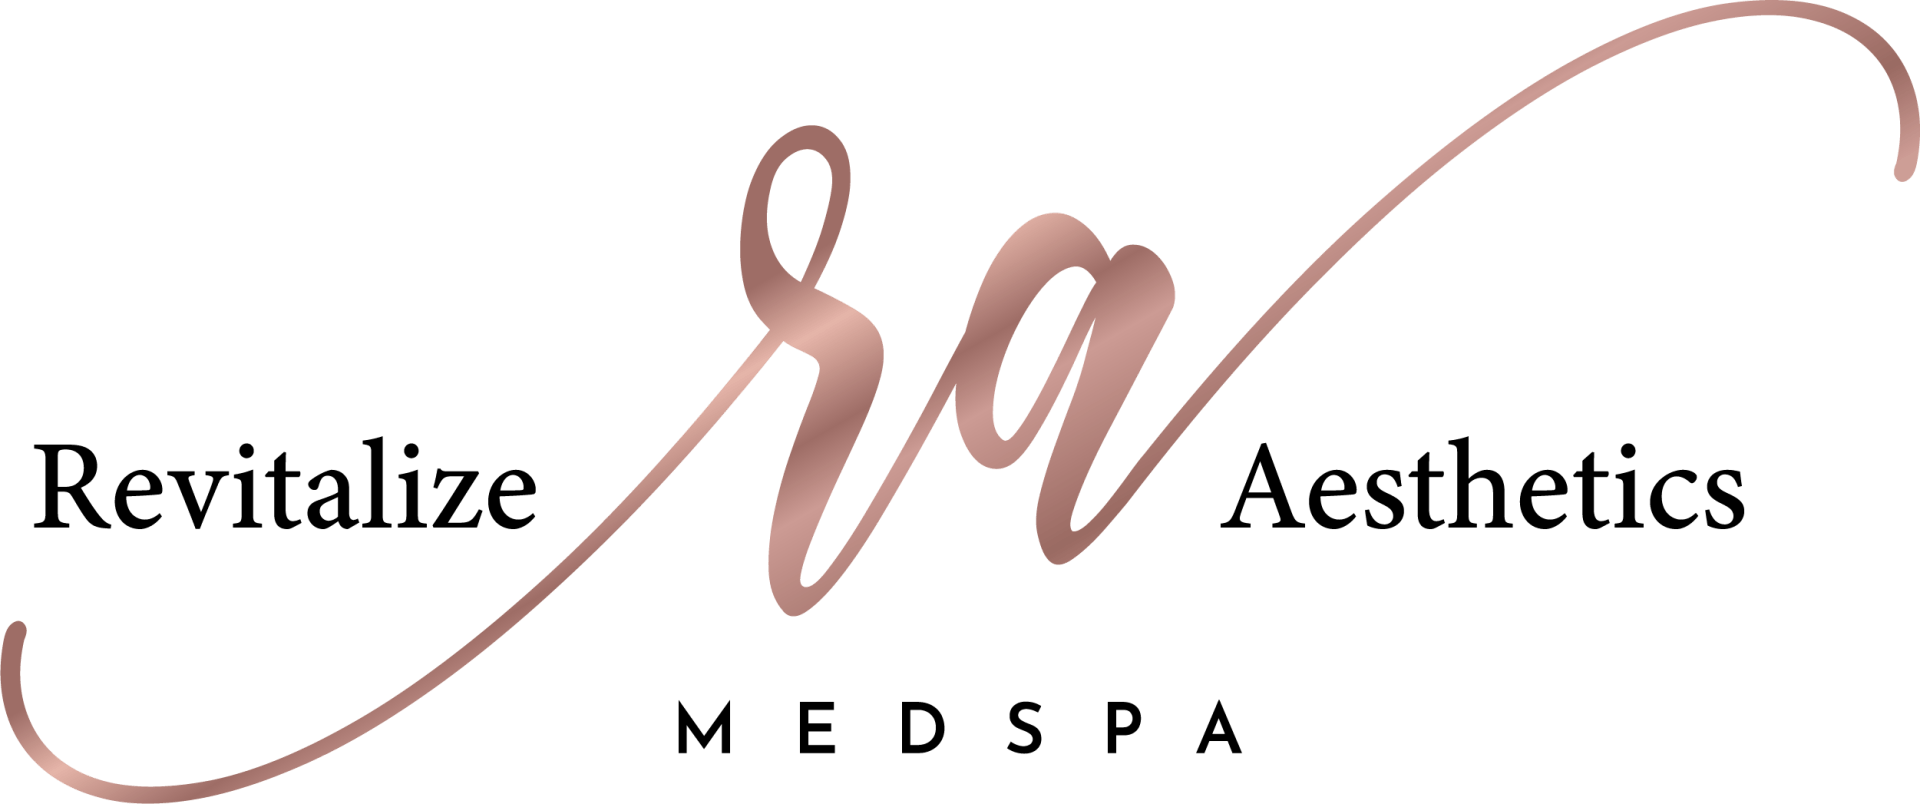 Revitalize Aesthetics Medspa Business Logo